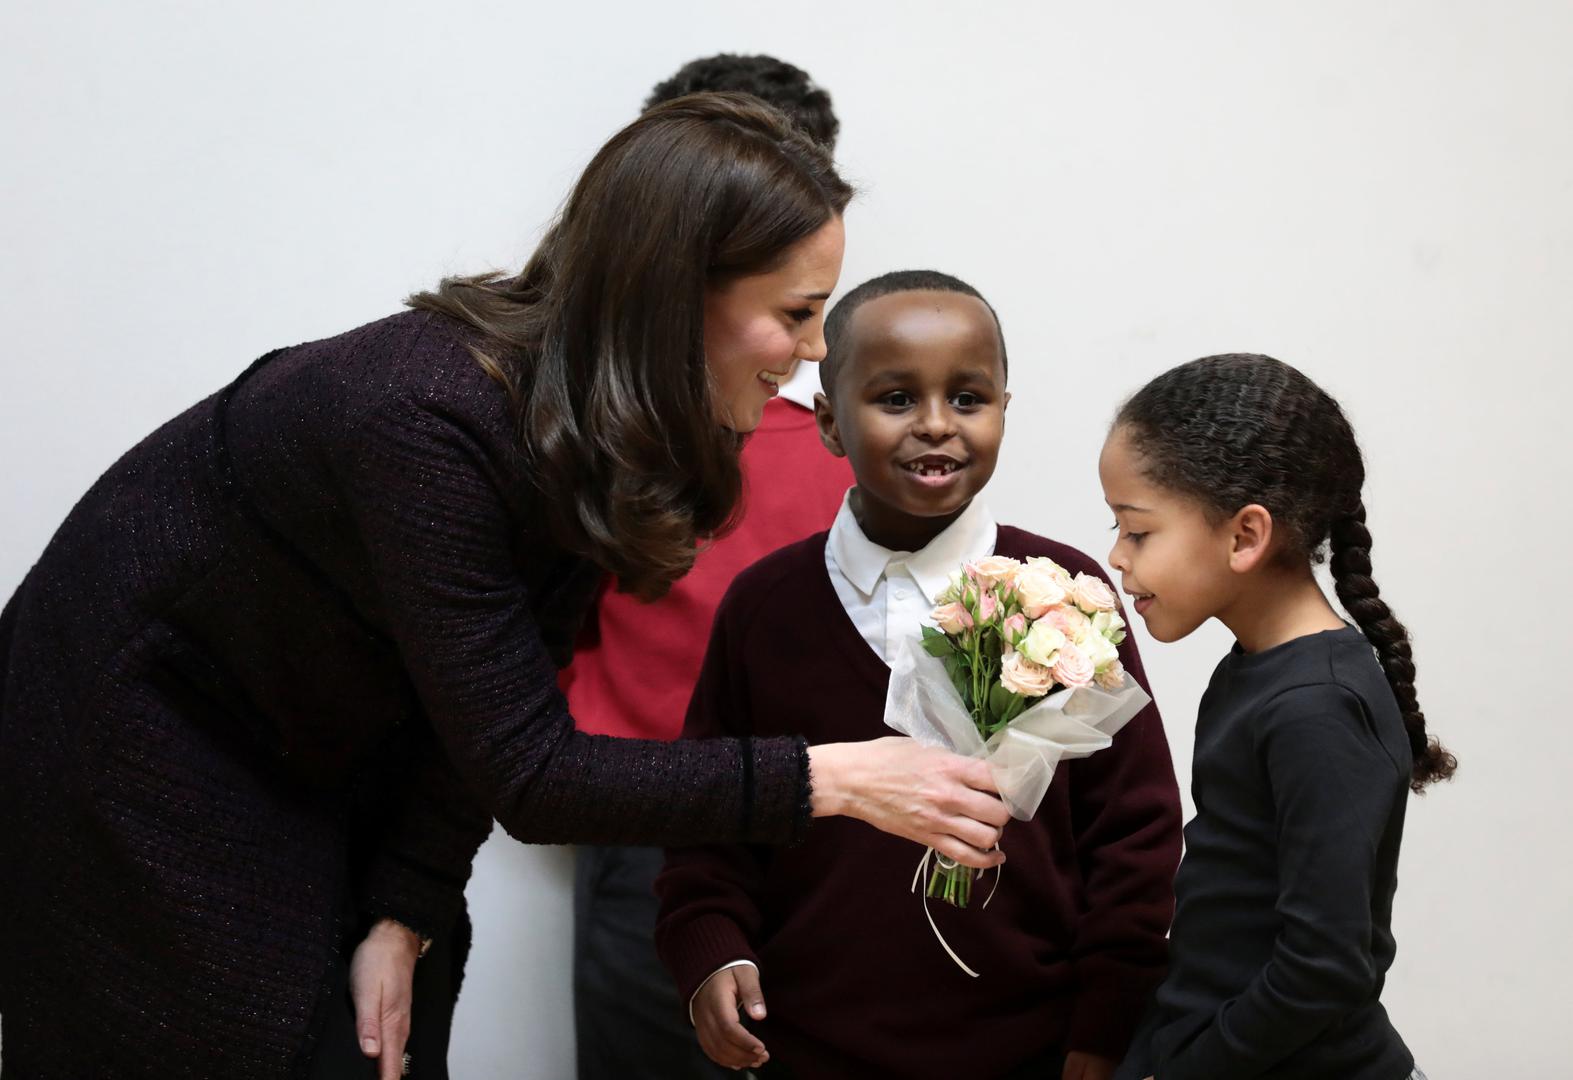 Kate Middleton jučer je posjetila djecu čiji su domovi stradali ovog ljeta u velikom požaru u Grenfell tornju.